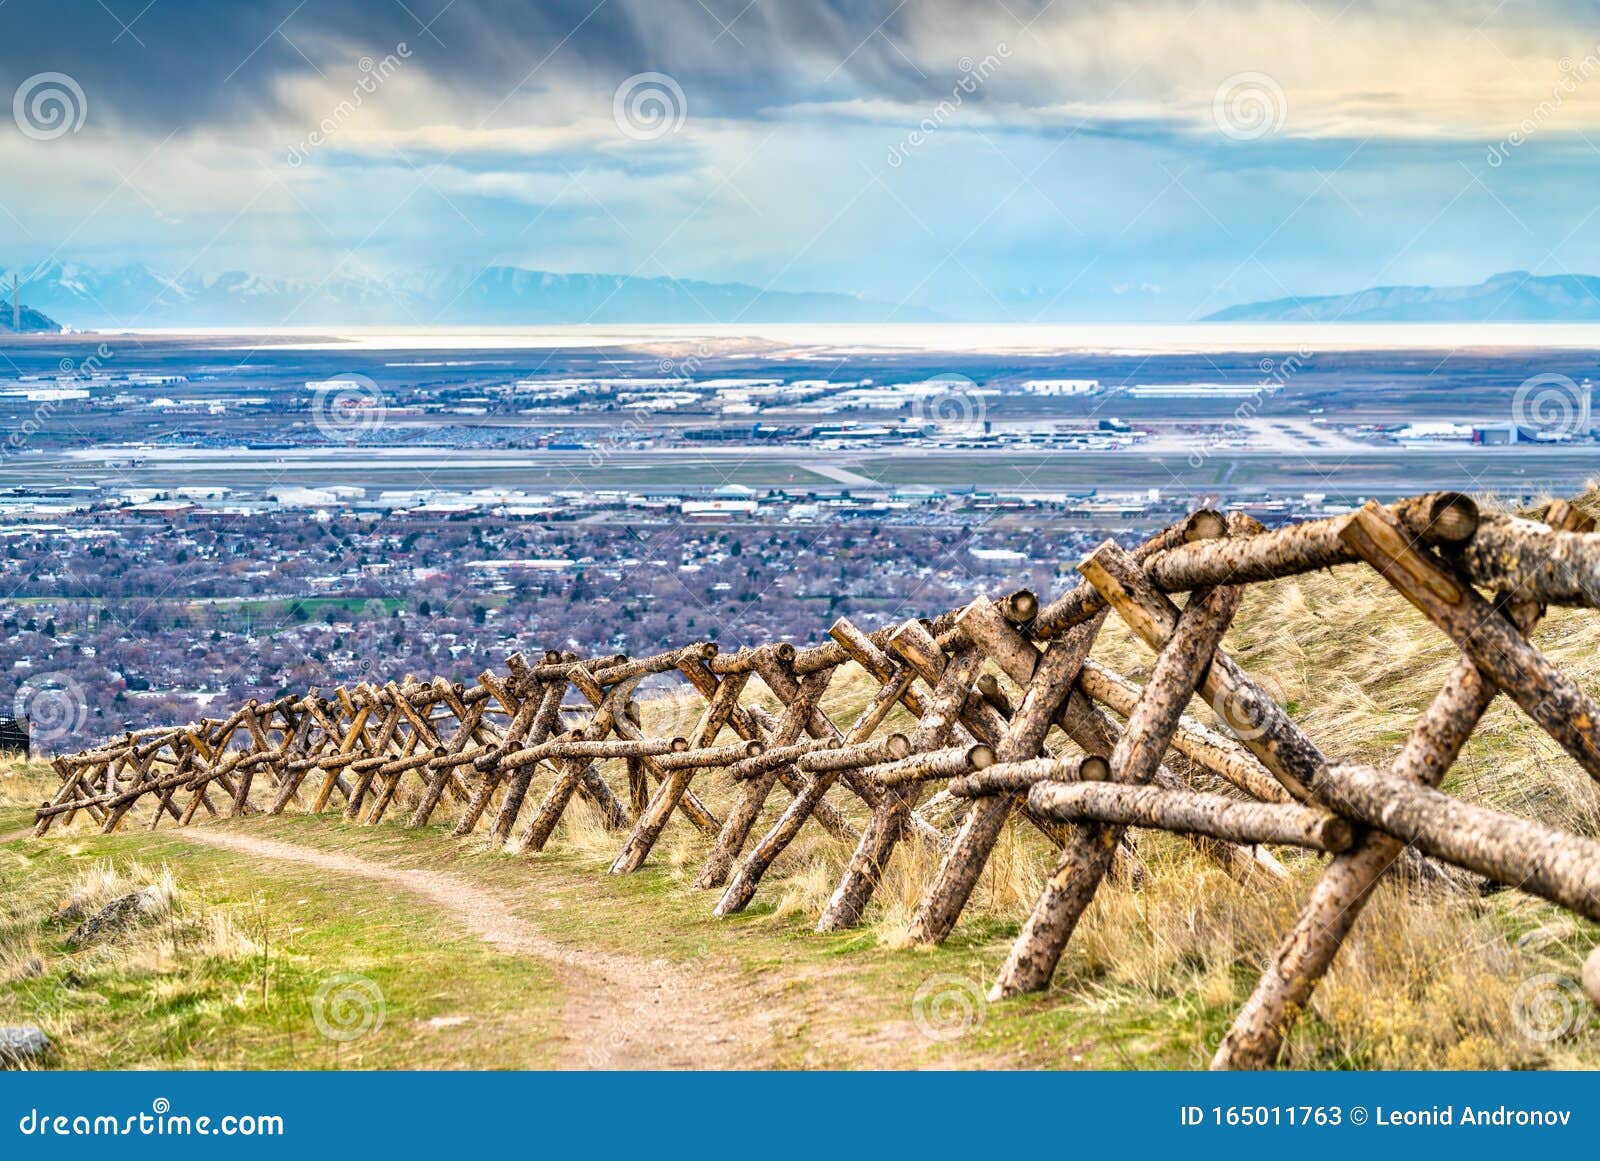 log fence at ensign peak in salt lake city, utah